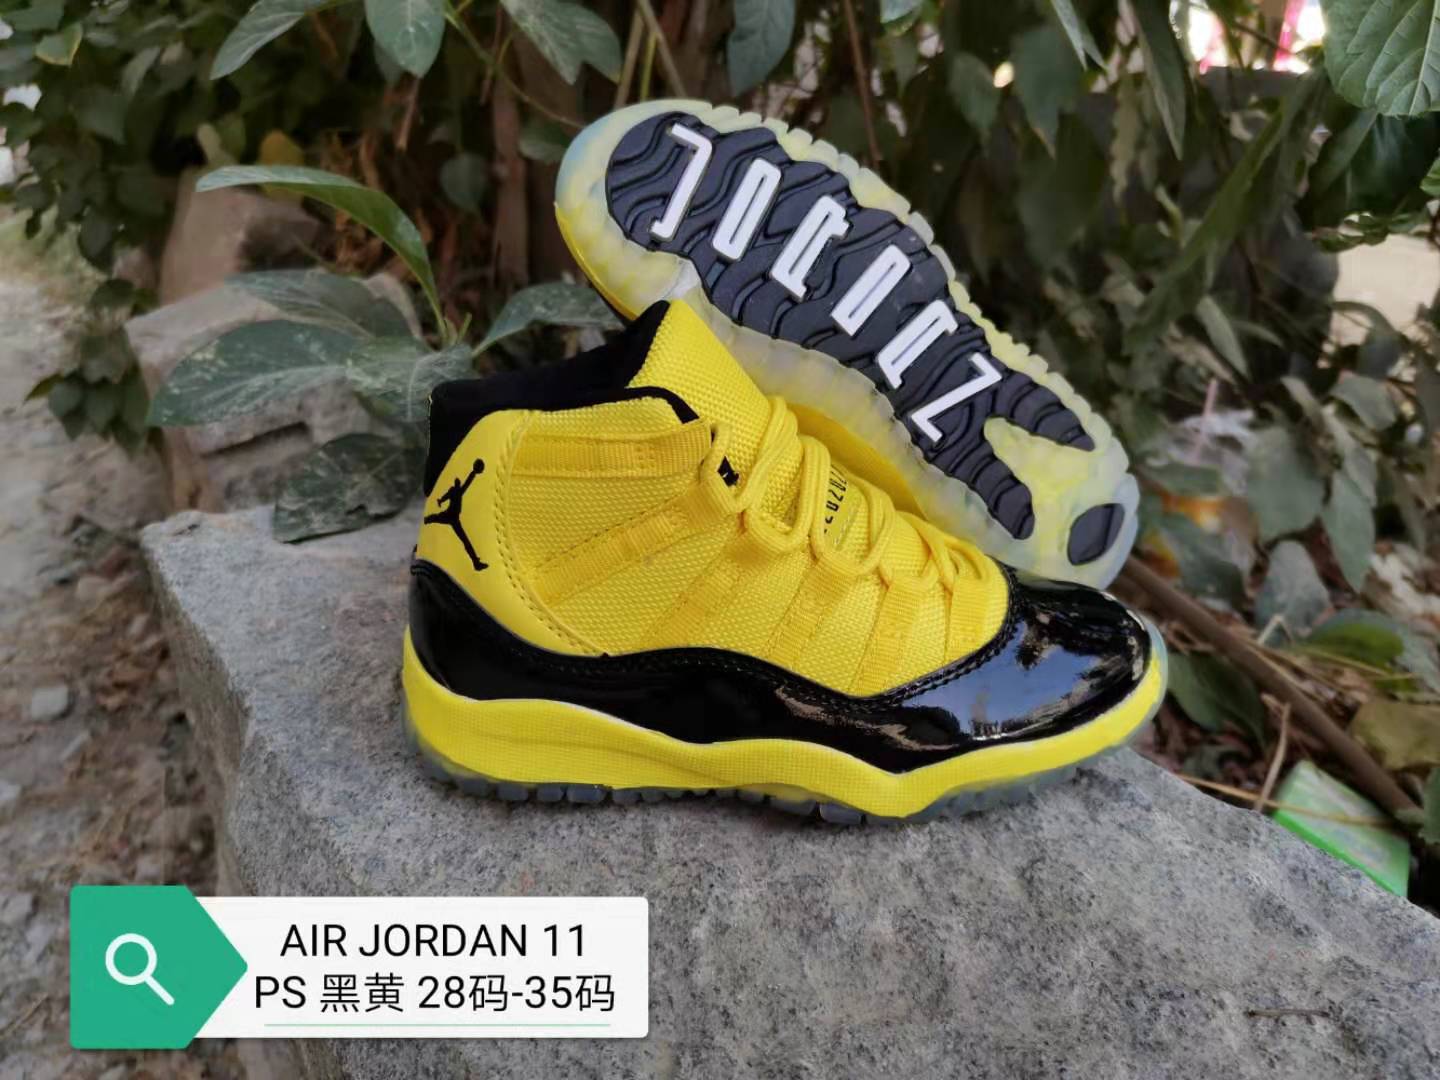 2019 Kids Air Jordan 11 Yellow Black Shoes